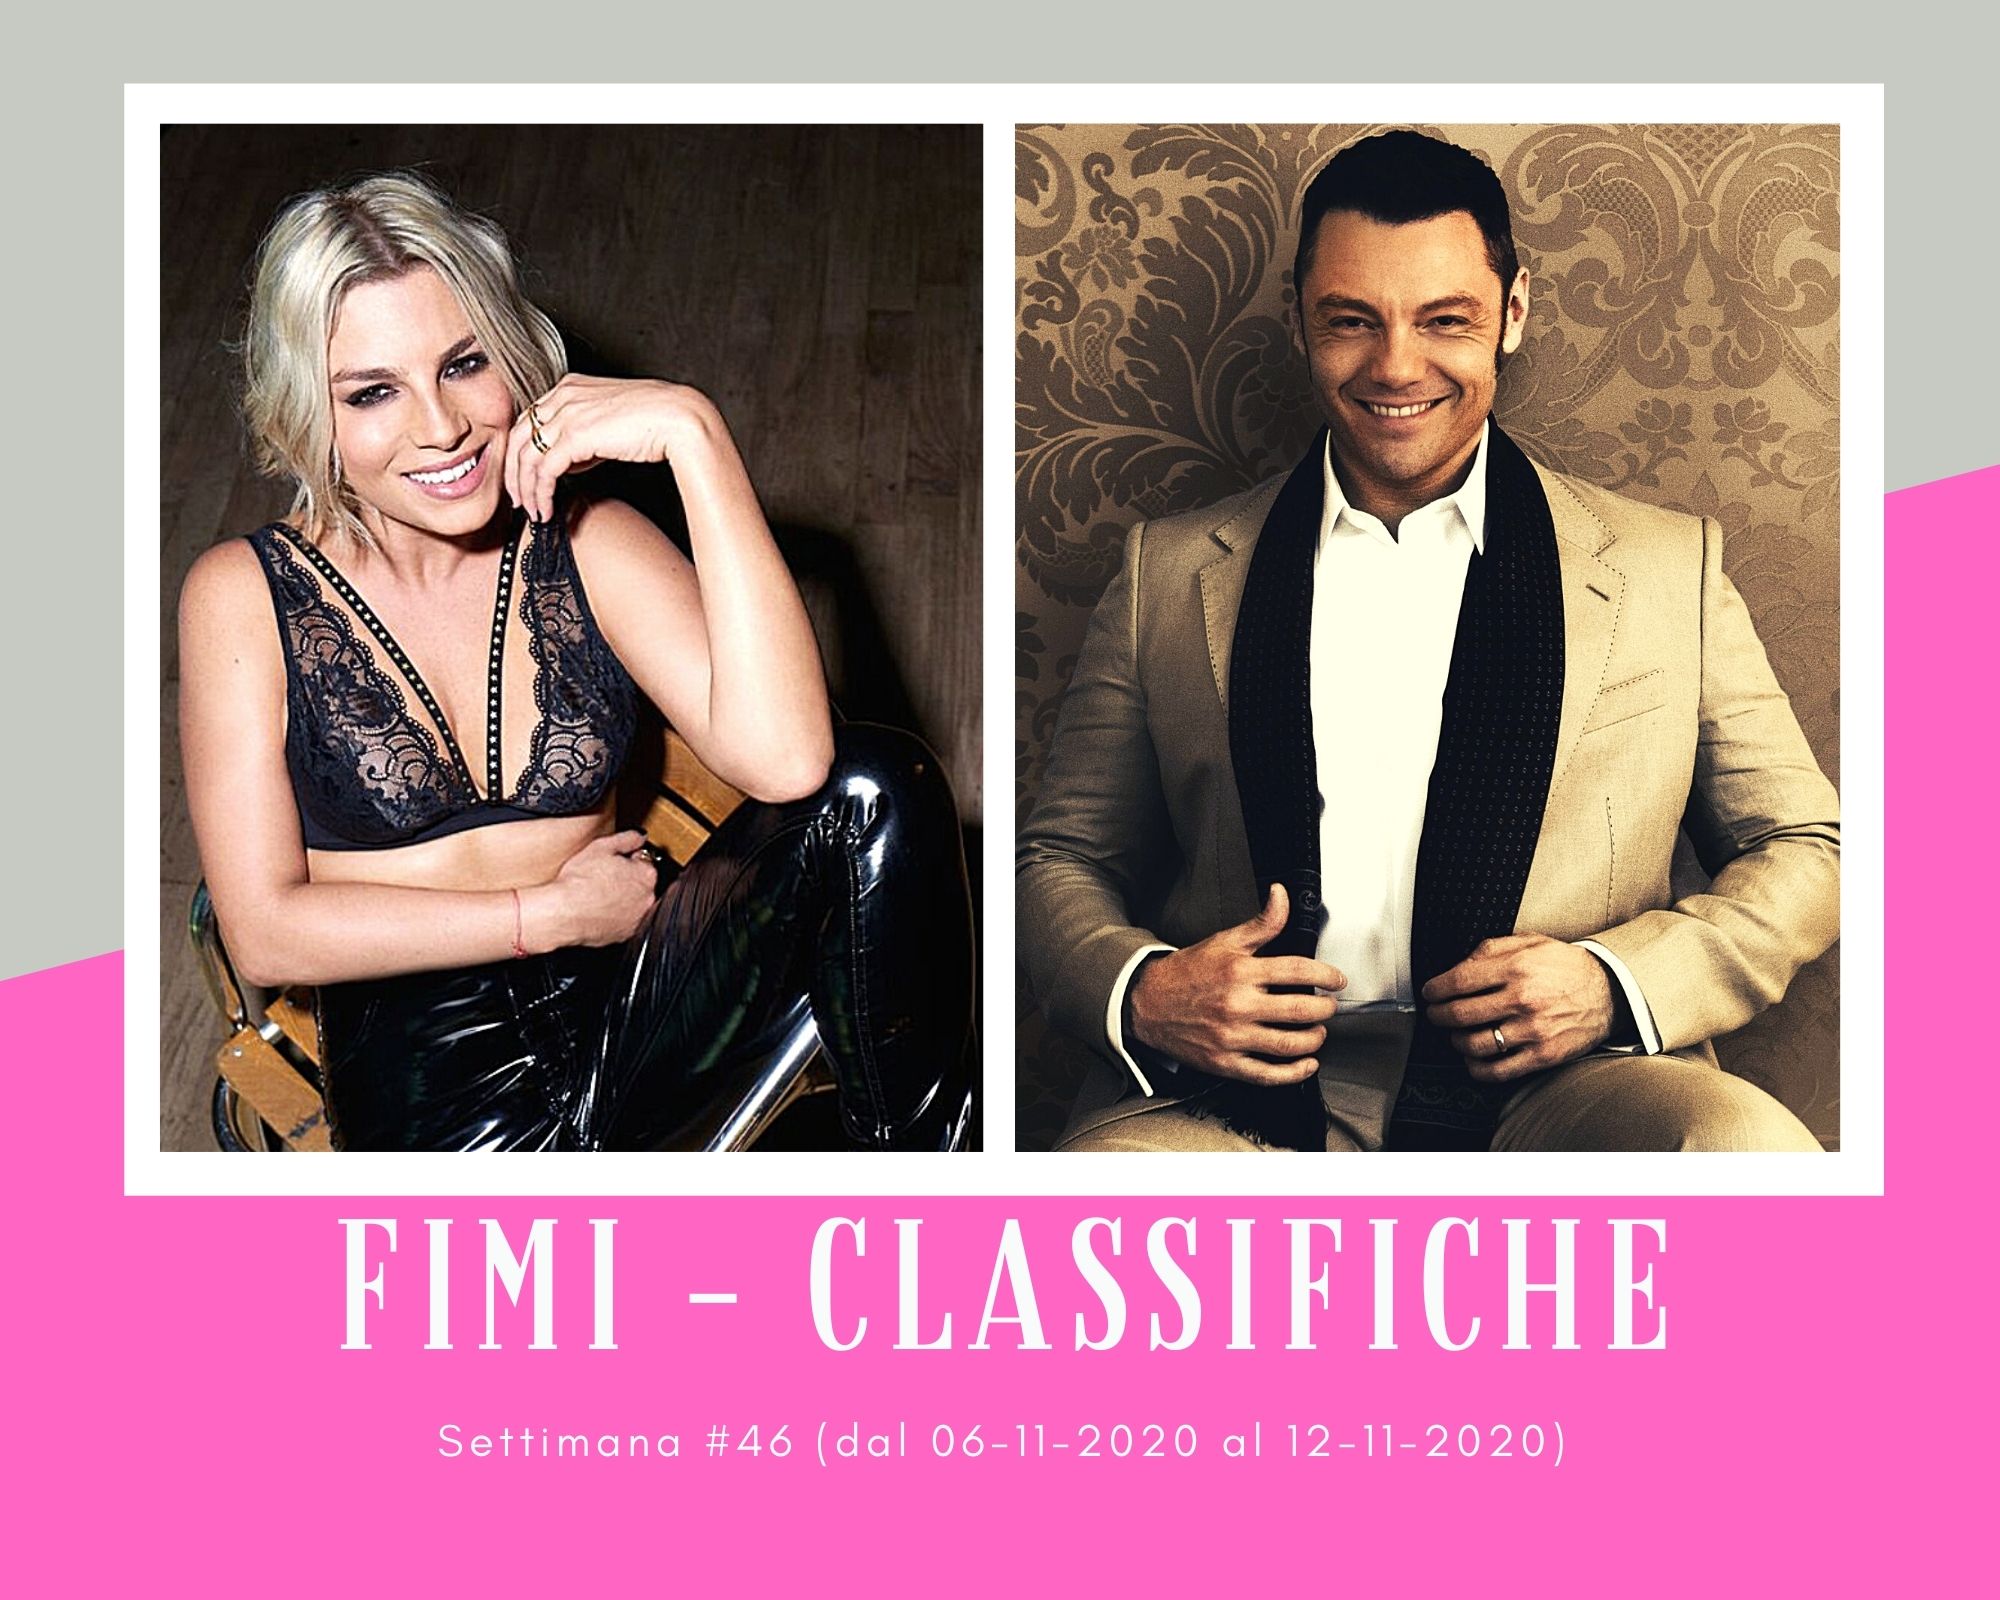 Classifiche FIMI, week 46. Boom per Emma e Tiziano Ferro in vinile. Ariana Grande preferita a Kylie Minogue